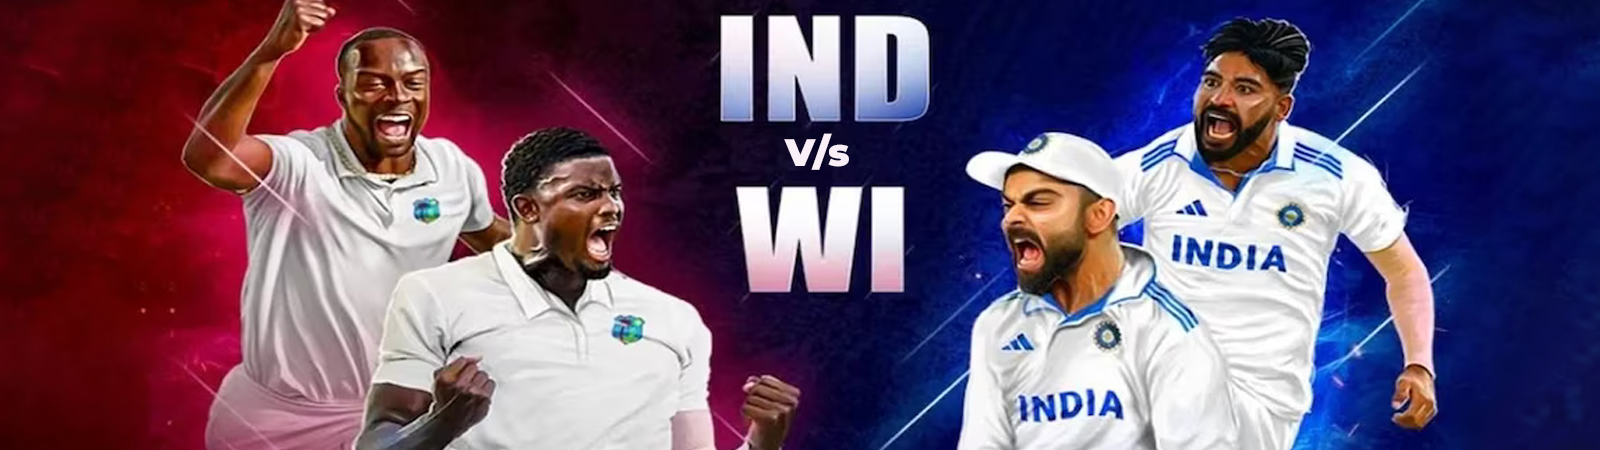 भारत बनाम वेस्टइंडीज टेस्ट सीरीज शुरू